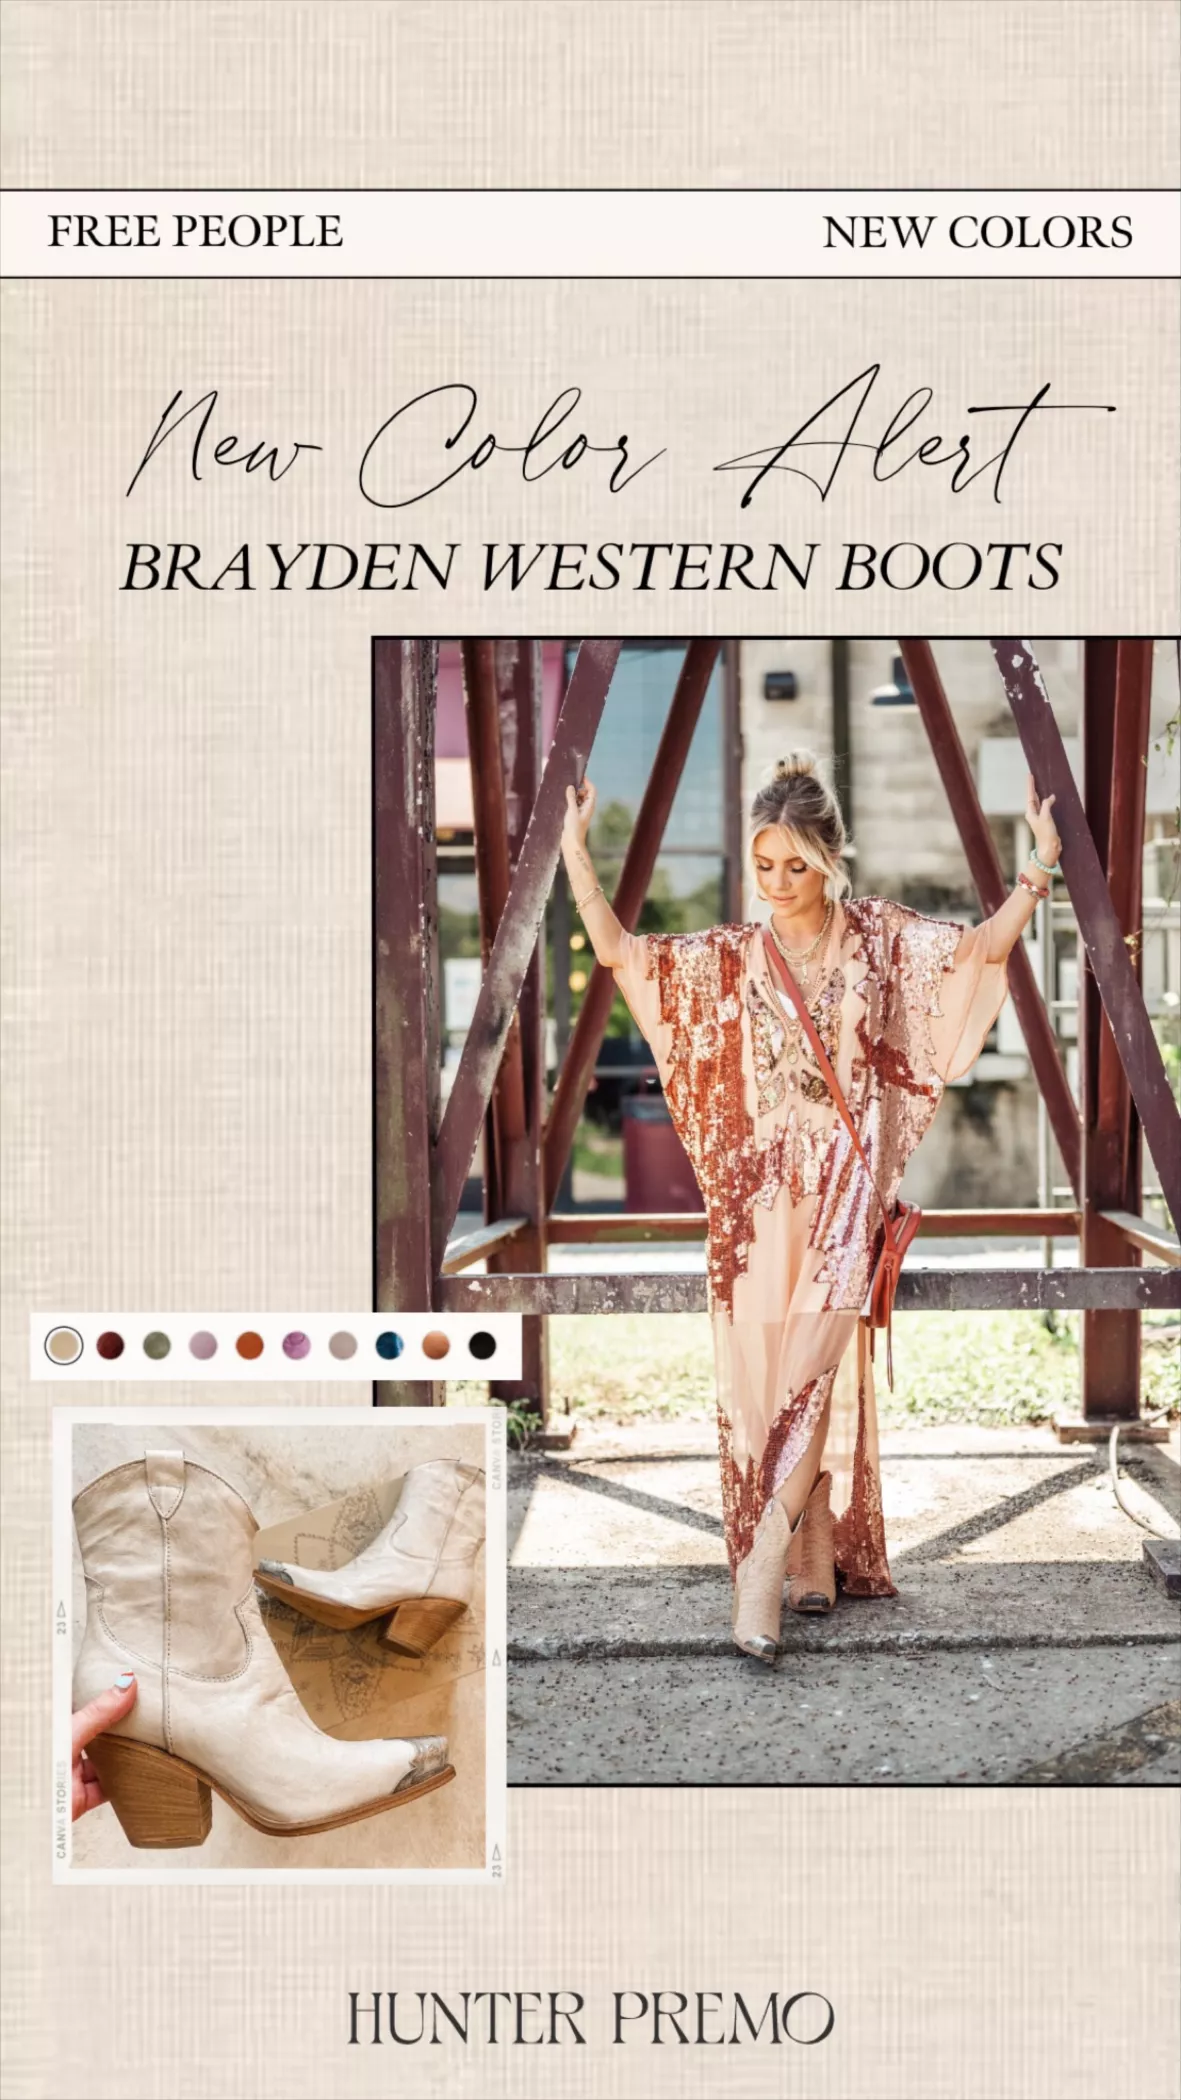 Brayden Western Boots